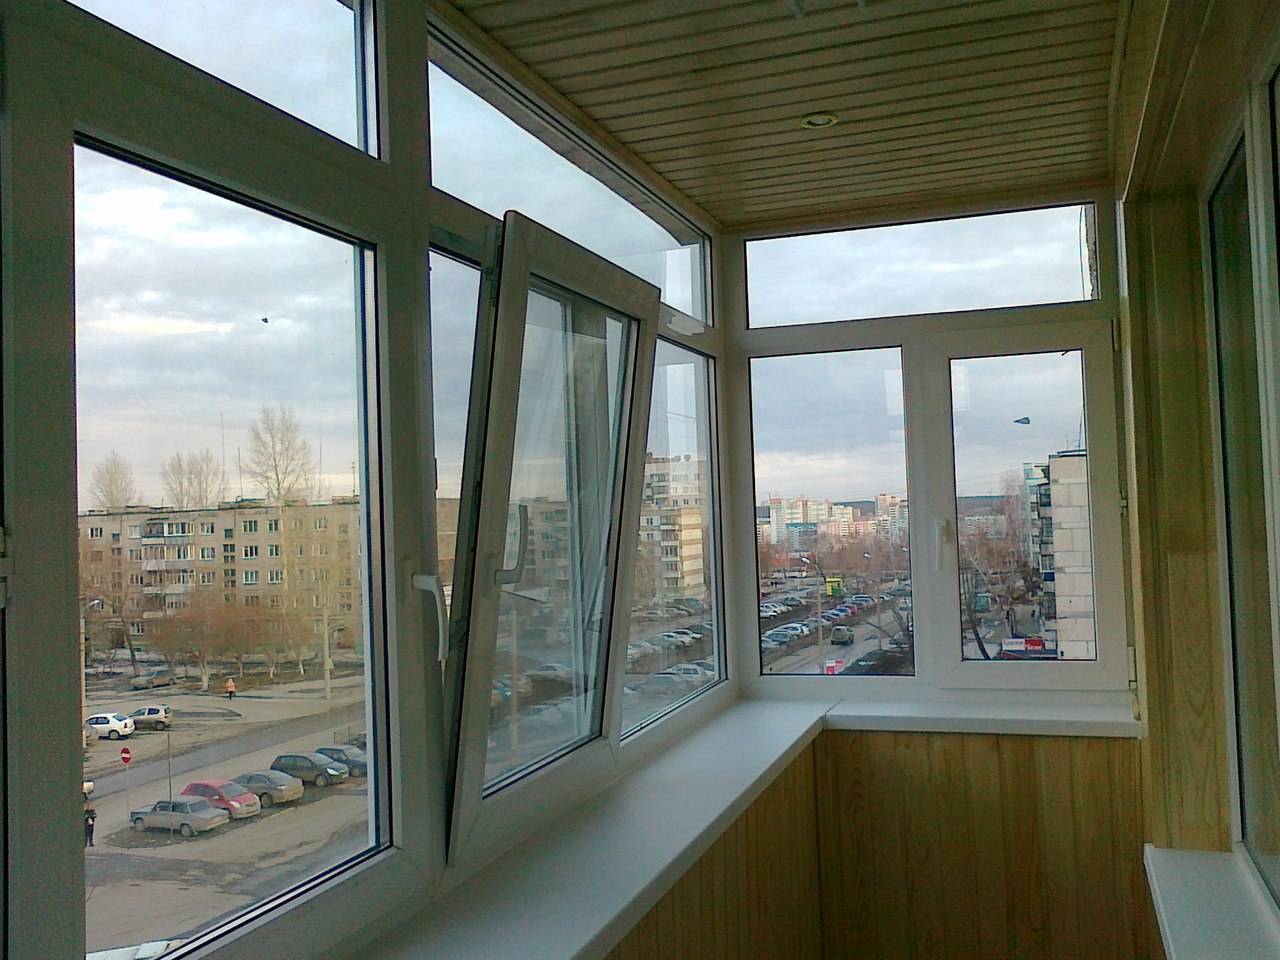 Какие окна лучше ставить на балконе пластиковые или алюминиевые